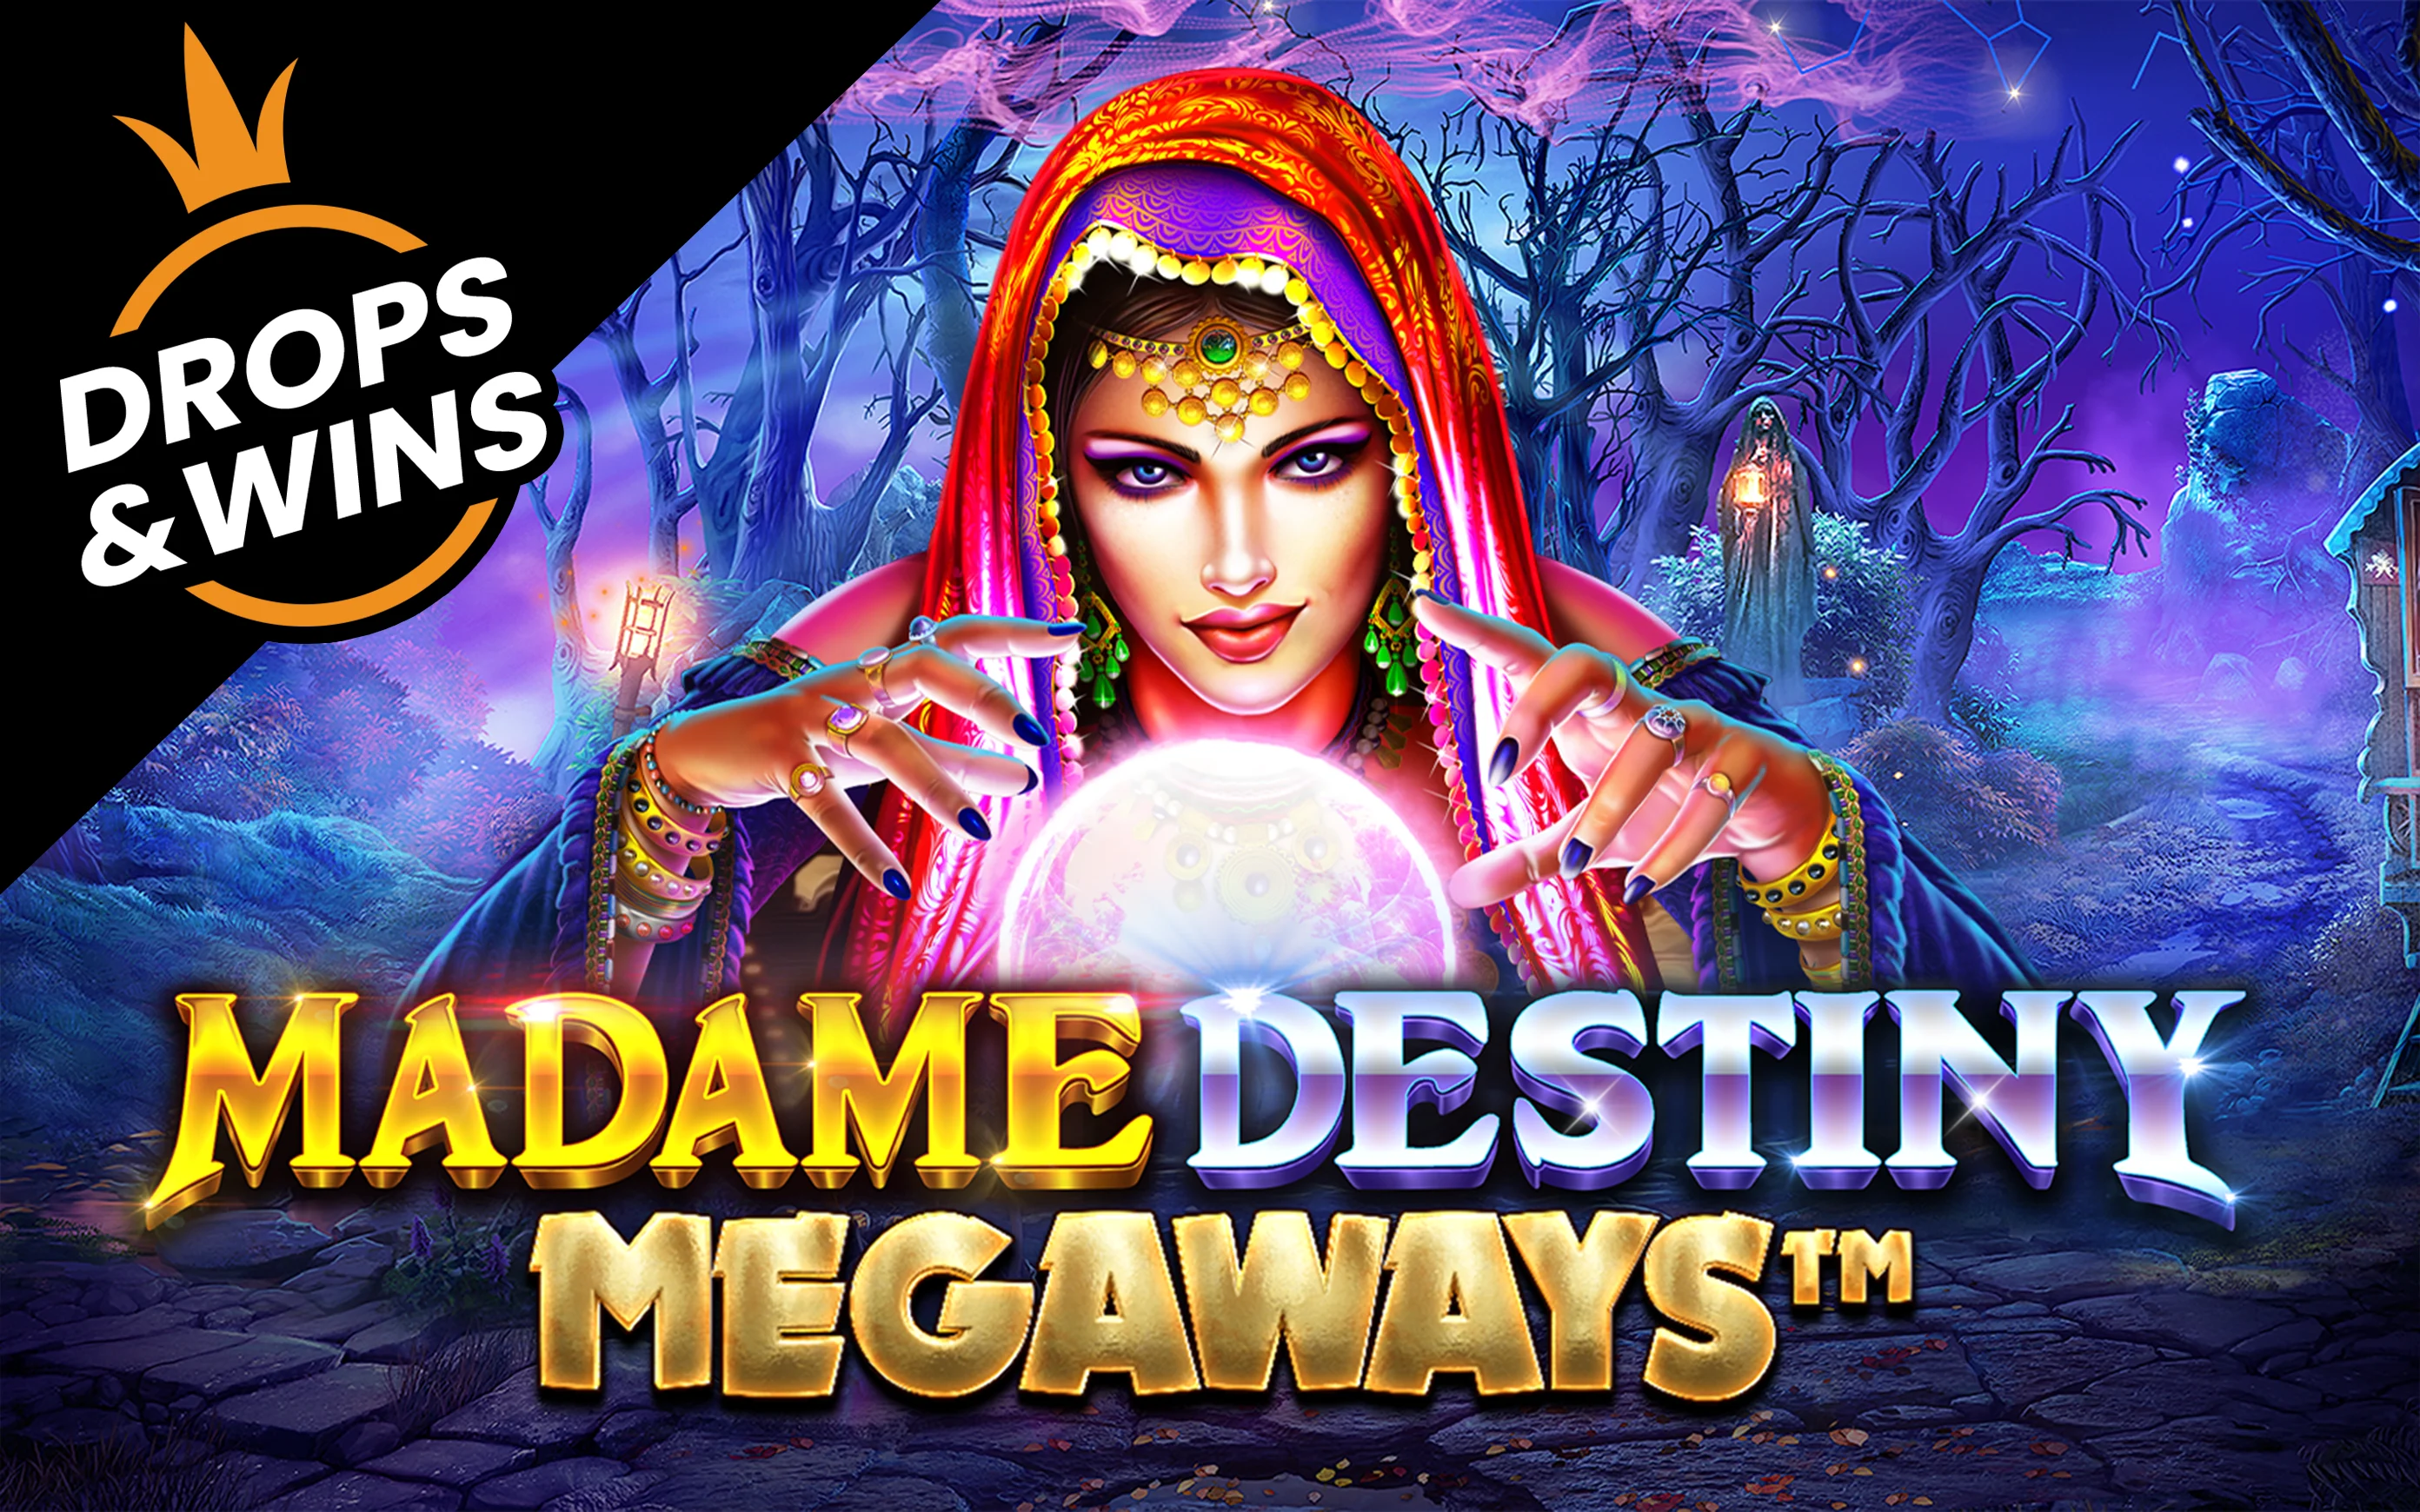 เล่น Madame Destiny Megaways™ บนคาสิโนออนไลน์ Starcasino.be